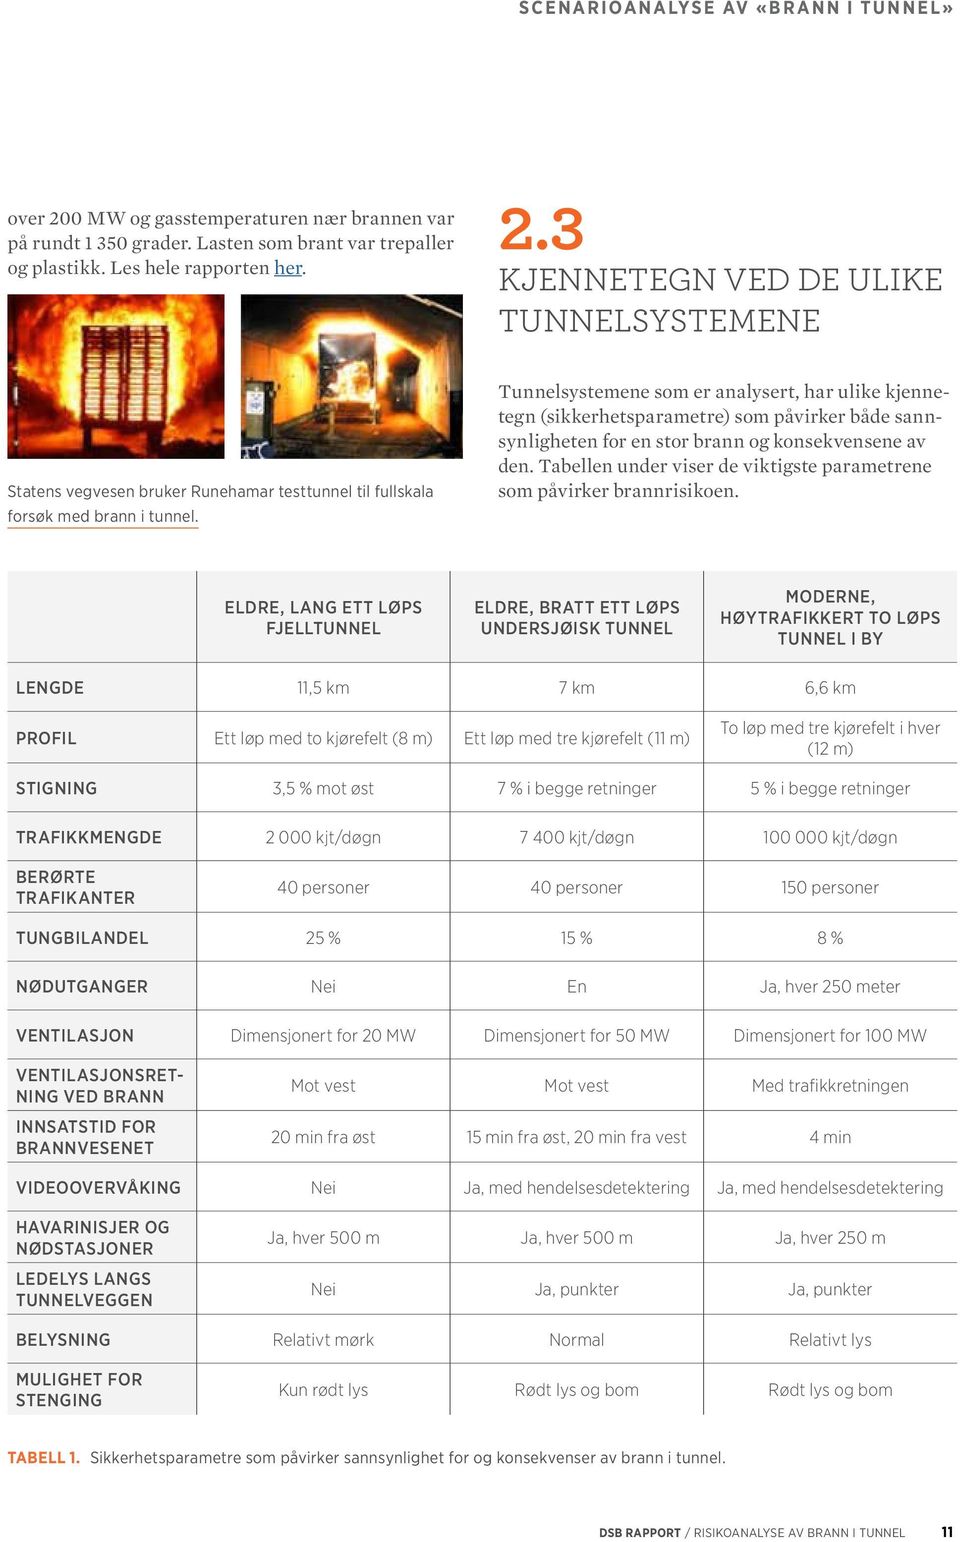 Tabellen under viser de viktigste parametrene som påvirker brannrisikoen.